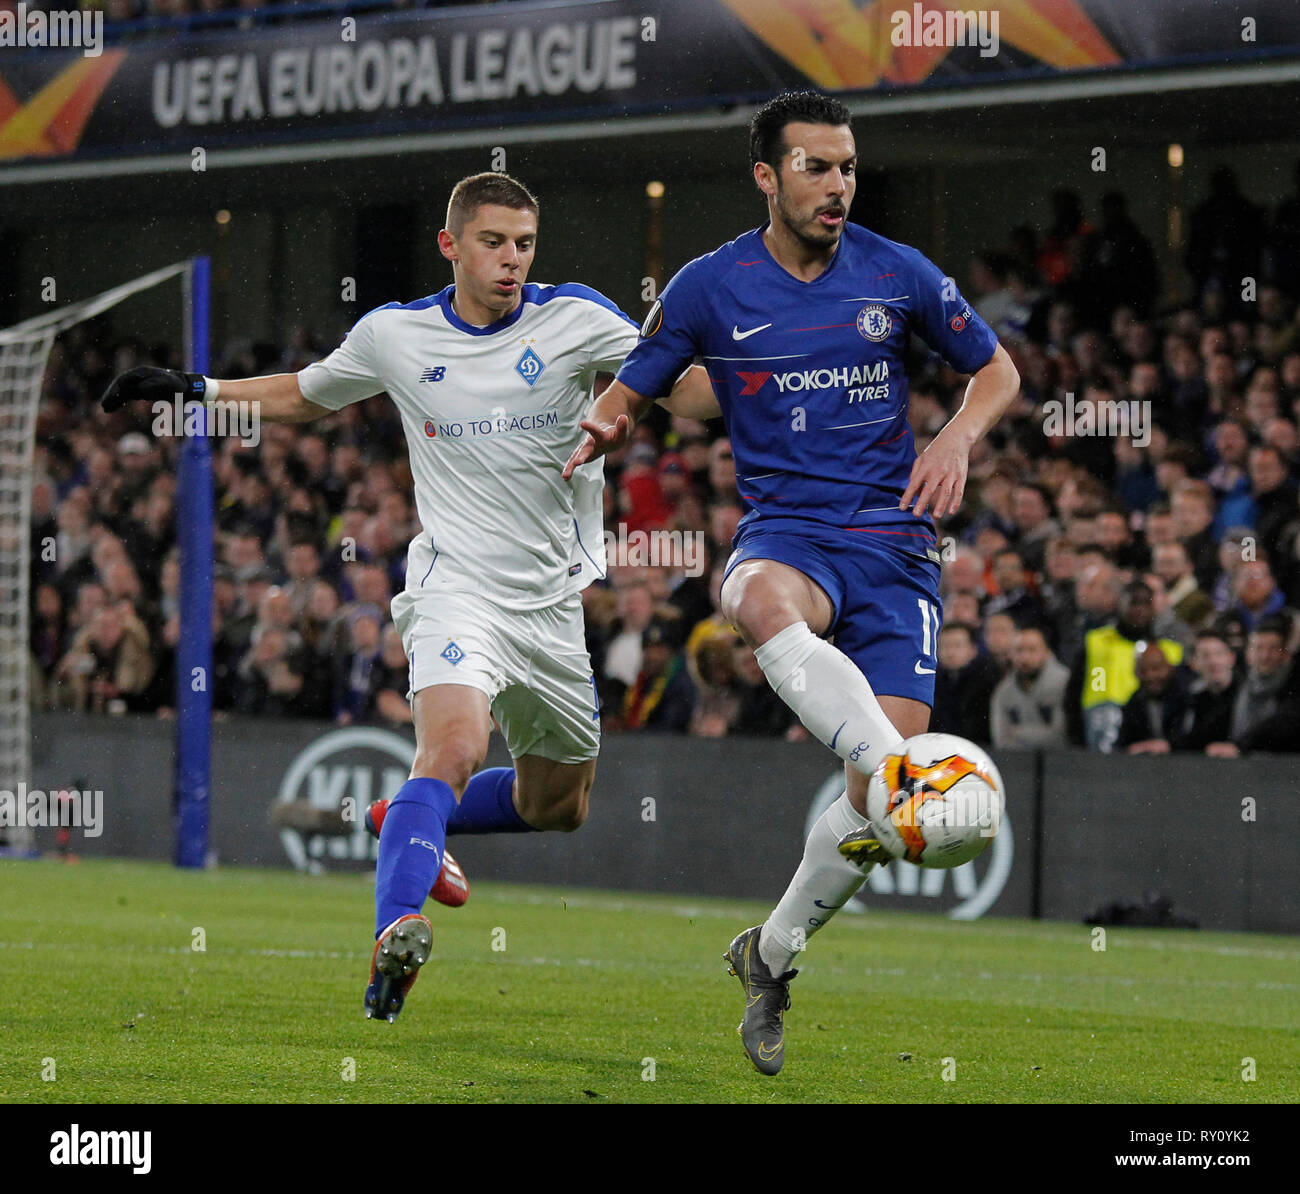 Londres, ANGLETERRE - 7 mars 2019 : Pedro de Chelsea lors de l'Europa League match entre Chelsea et Dynamo Kiev à Stamford Bridge. Banque D'Images